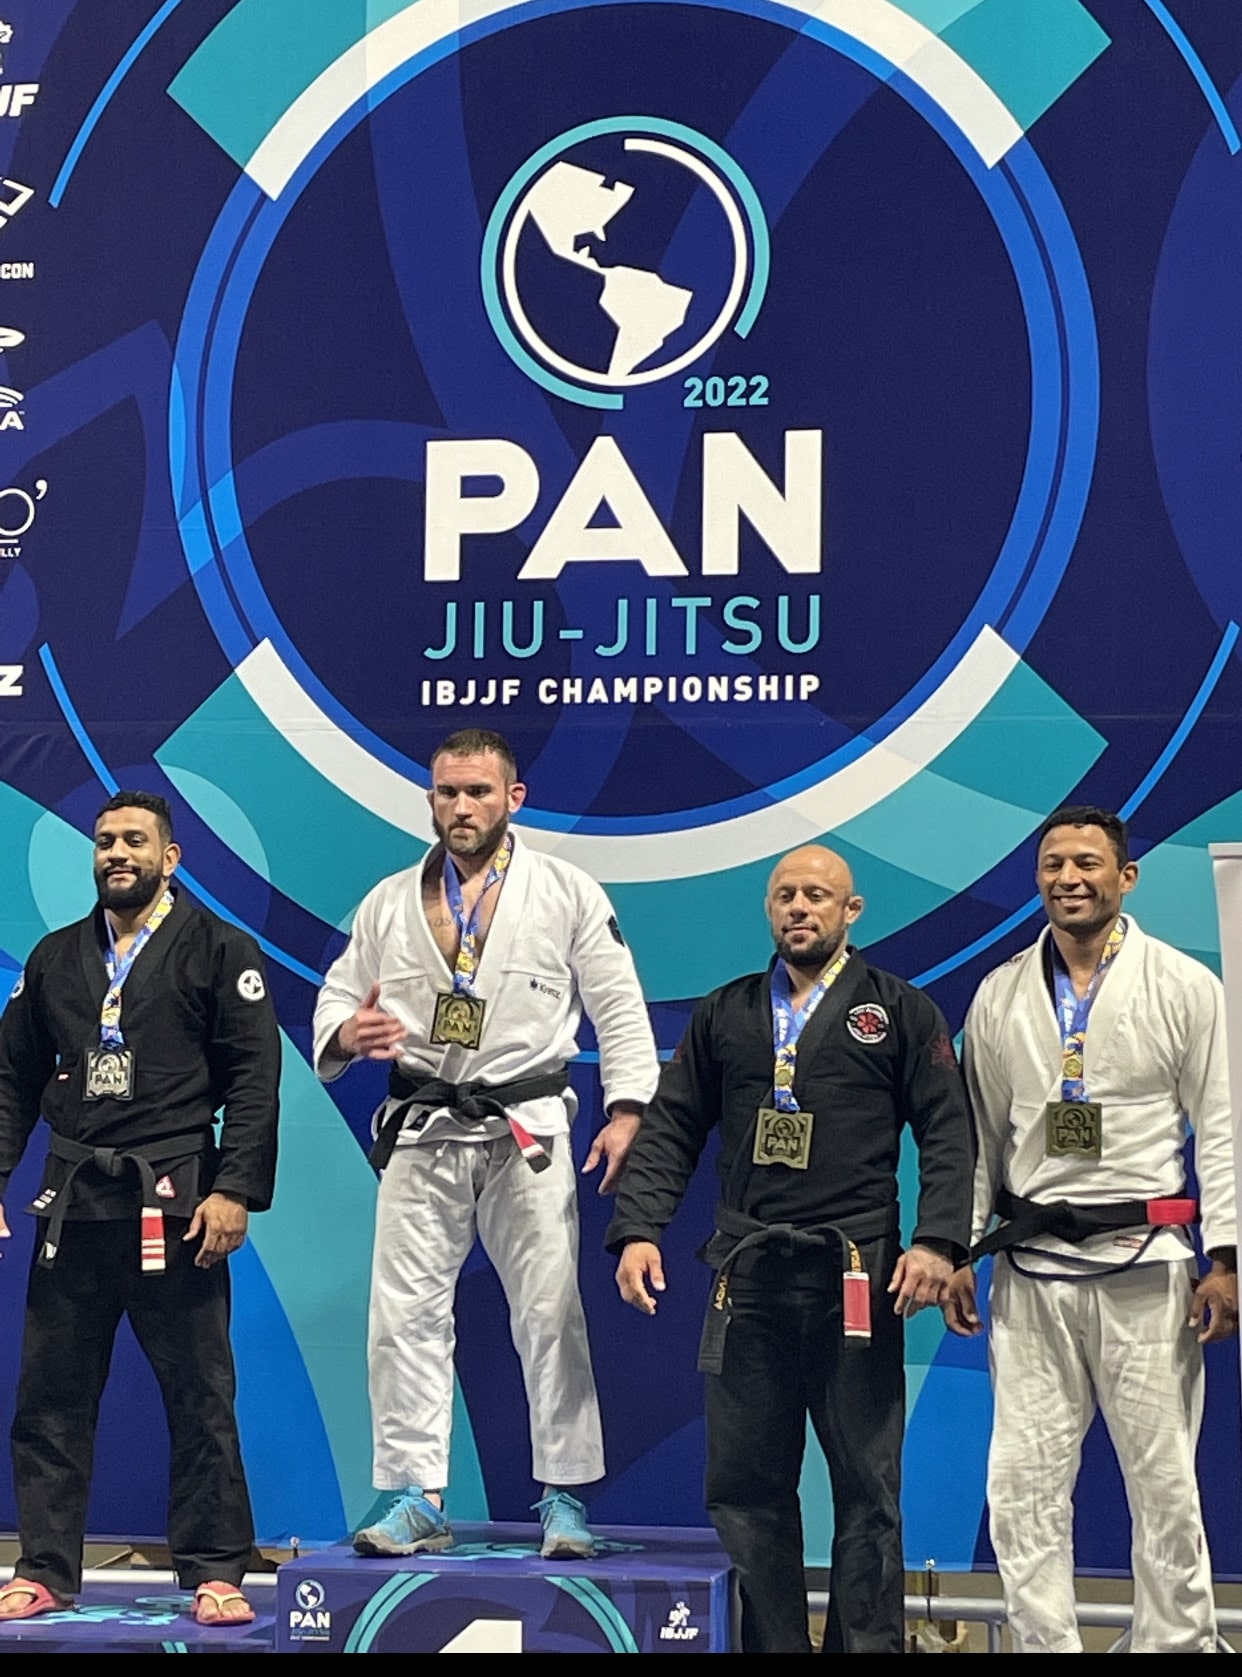 4x Pan IBJJF Jiu-Jitsu Champion!! Today I won the Pan IBJJF after 4  matches, I'm very happy to work my game winning 3 matches by…